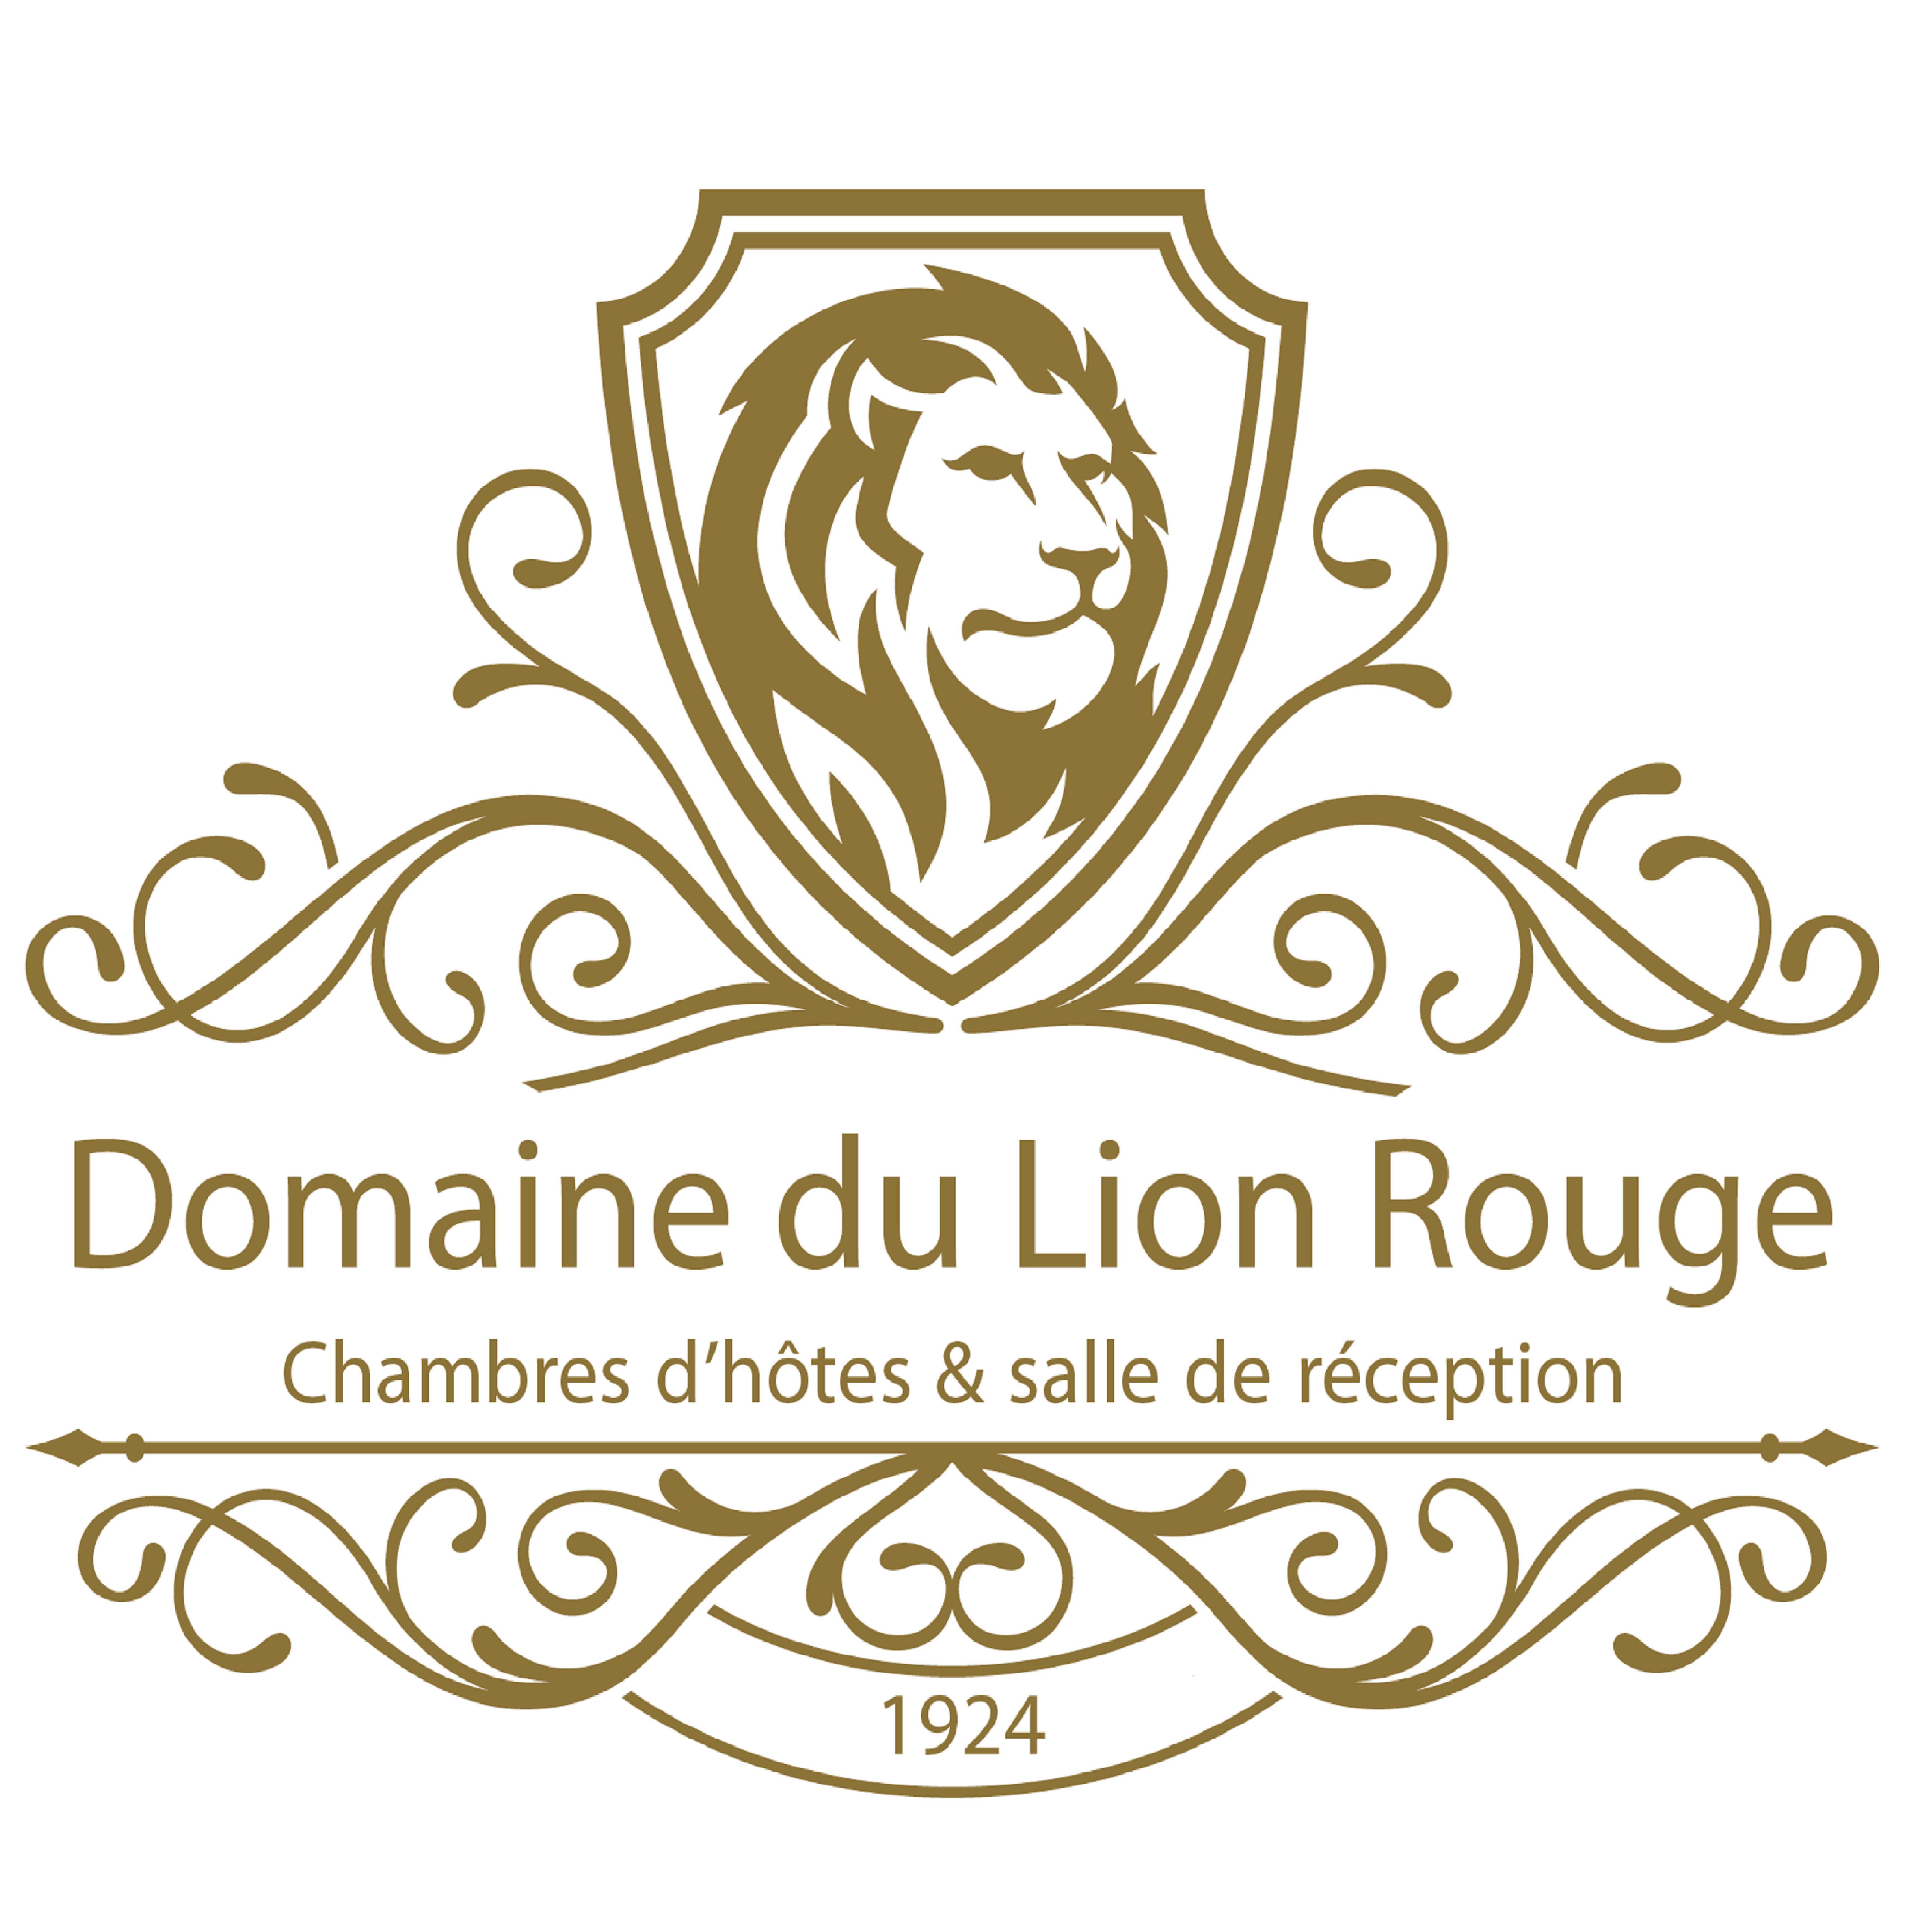 Domaine du Lion Rouge